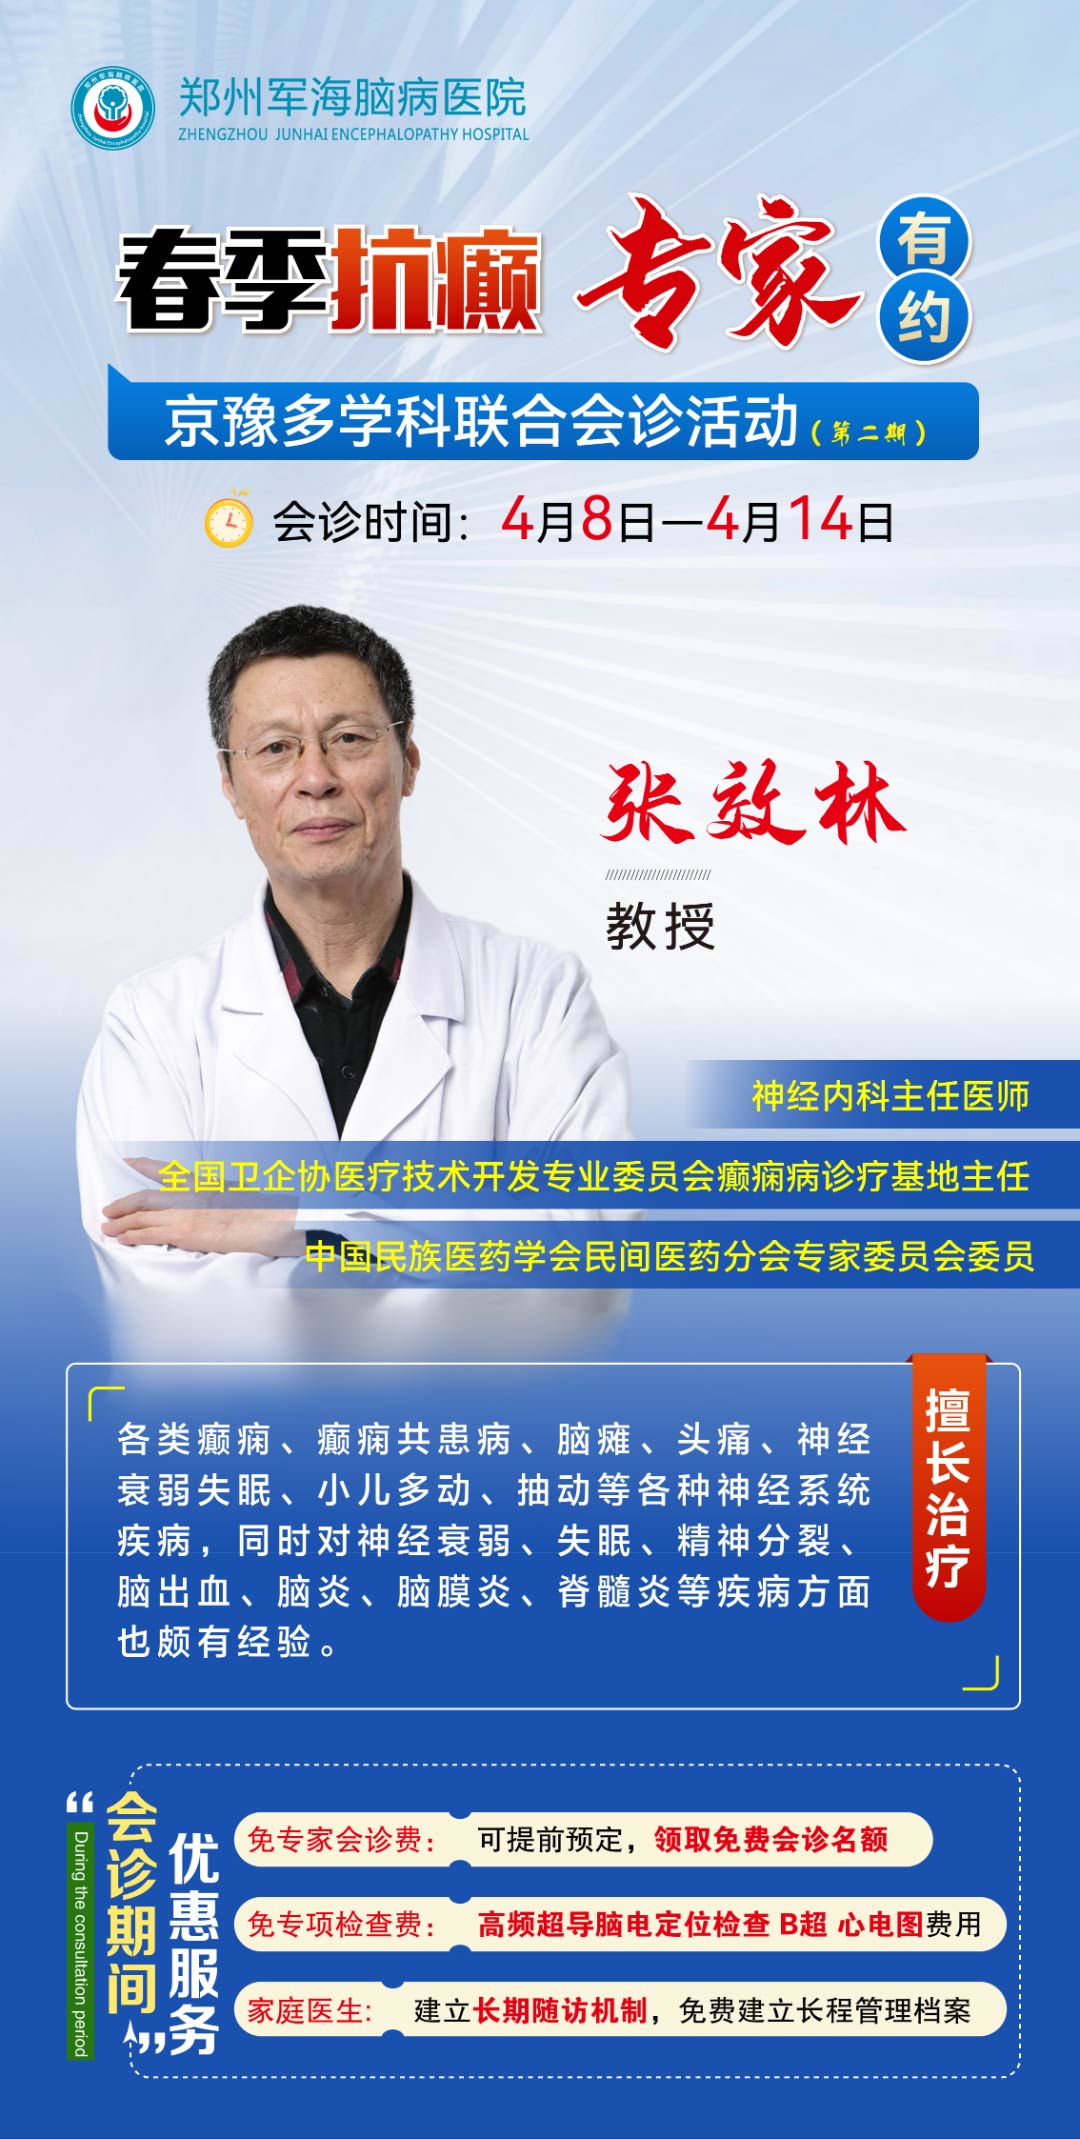 春季抗癫，北京脑病专家在郑坐诊，与您相约！点击报名！